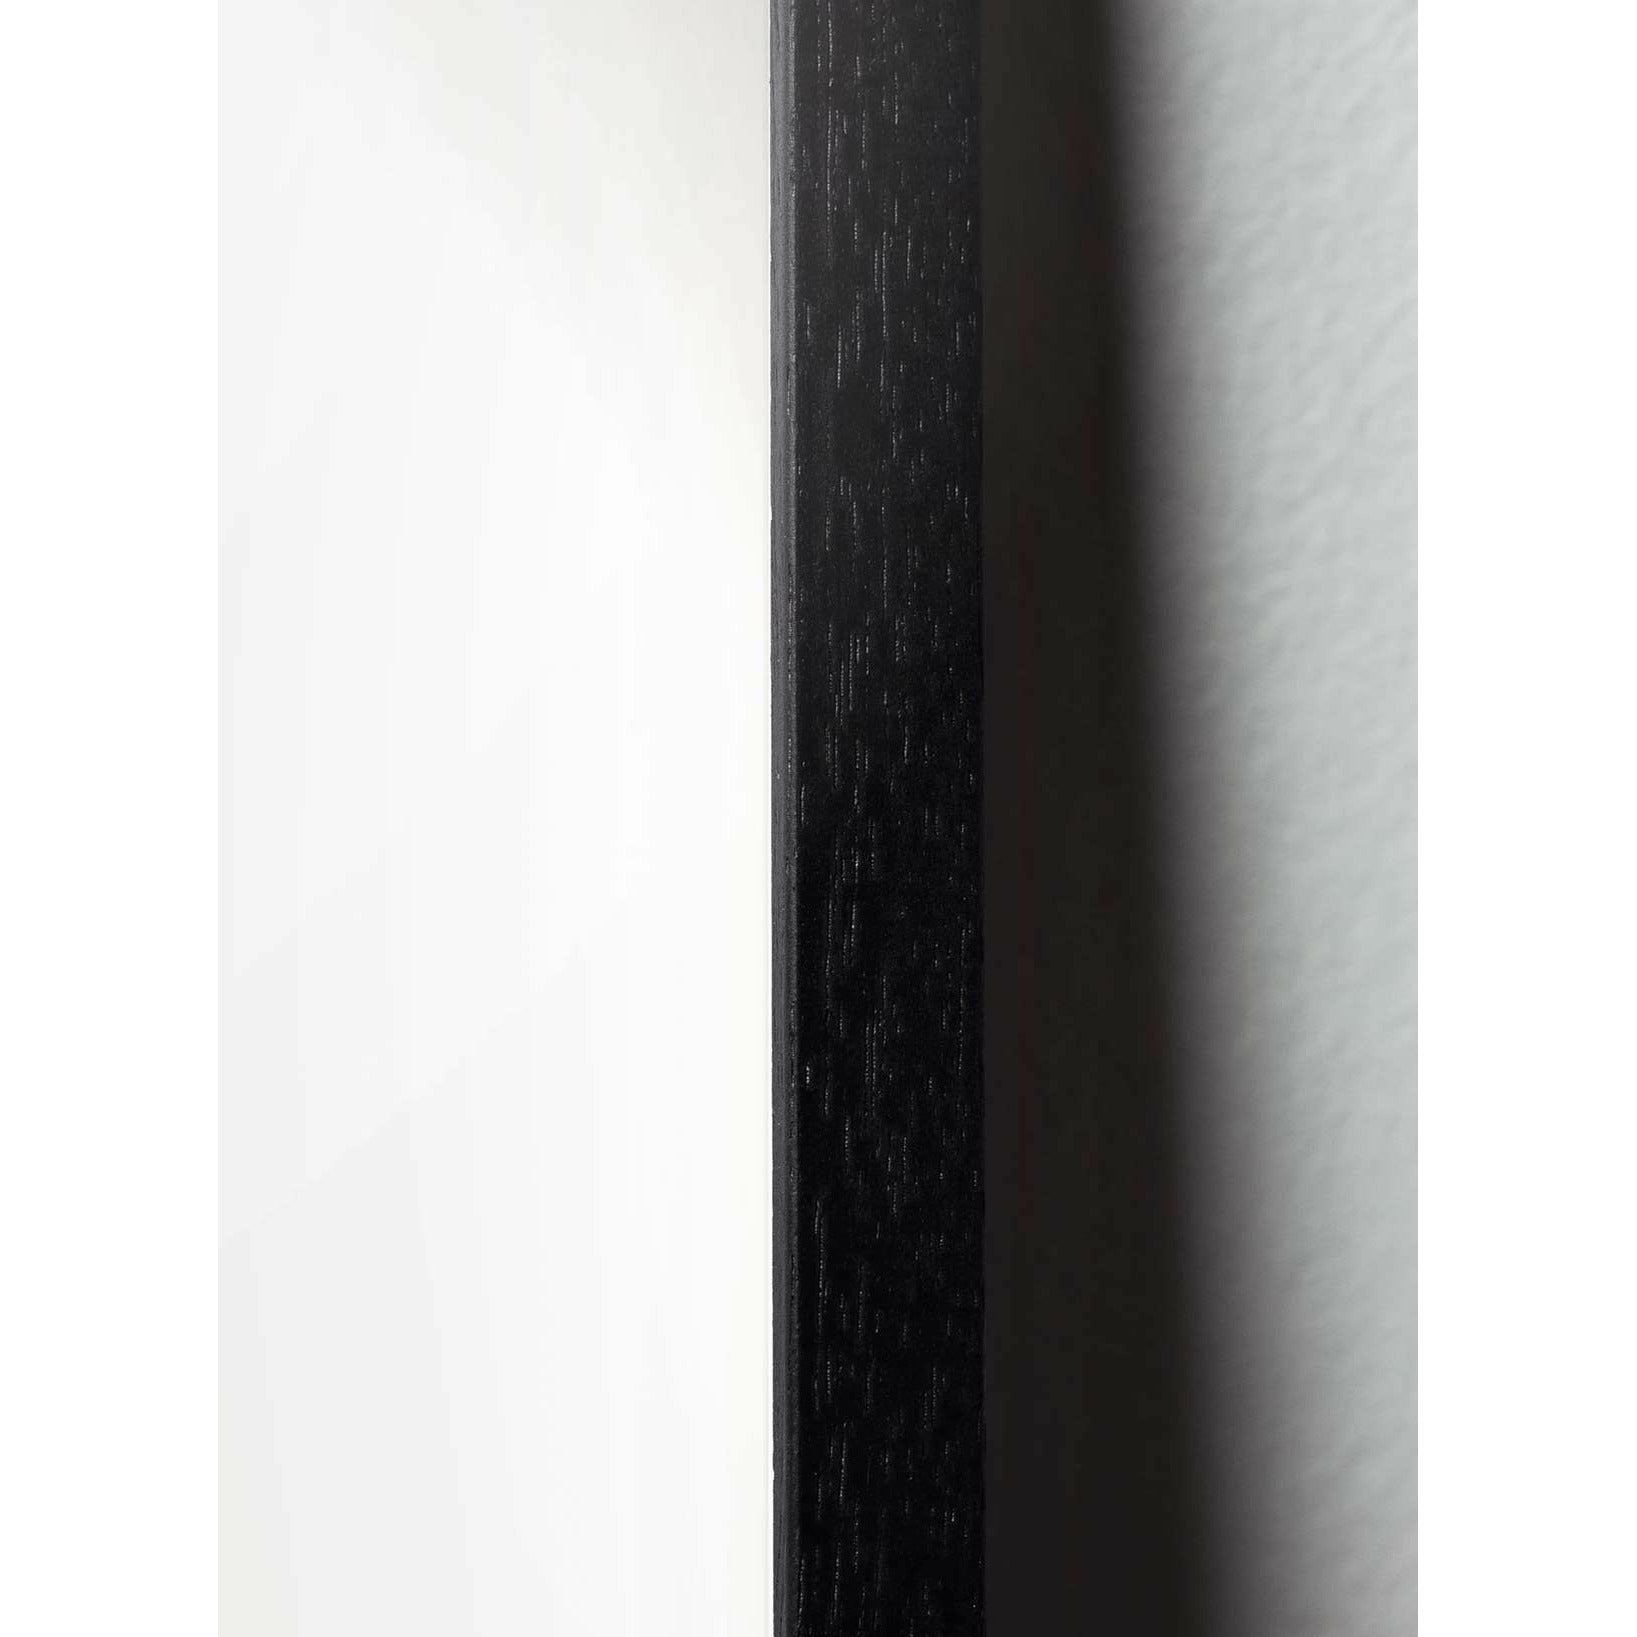 brainchild Blumenpot klassisches Poster, Rahmen im schwarzen lackierten Holz 50x70 cm, schwarzer Hintergrund